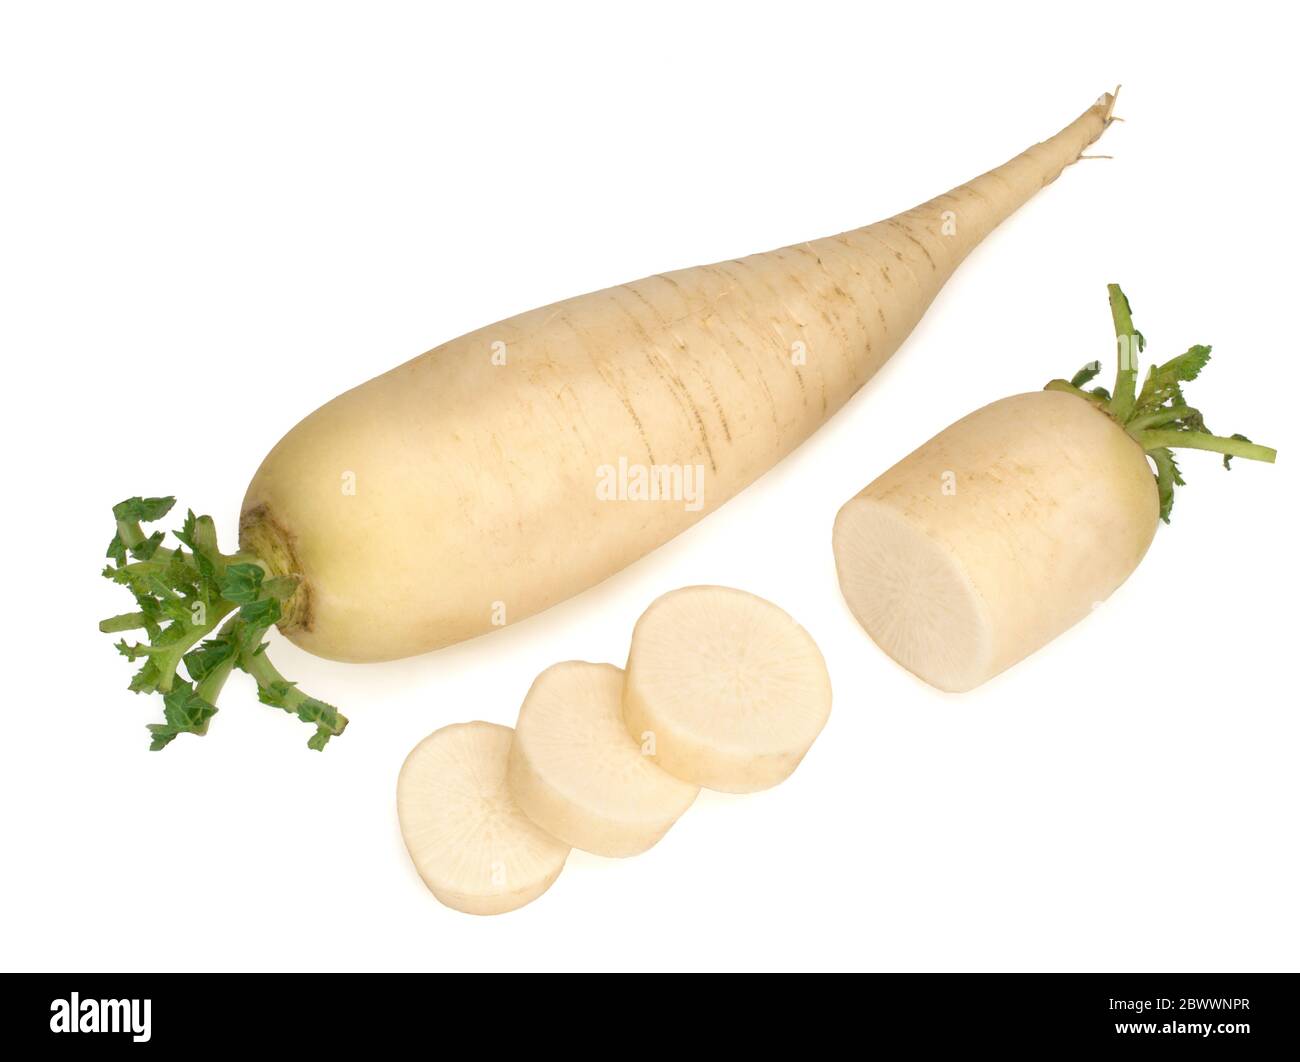 fresh daikon radish with slices isolated on white background Stock Photo